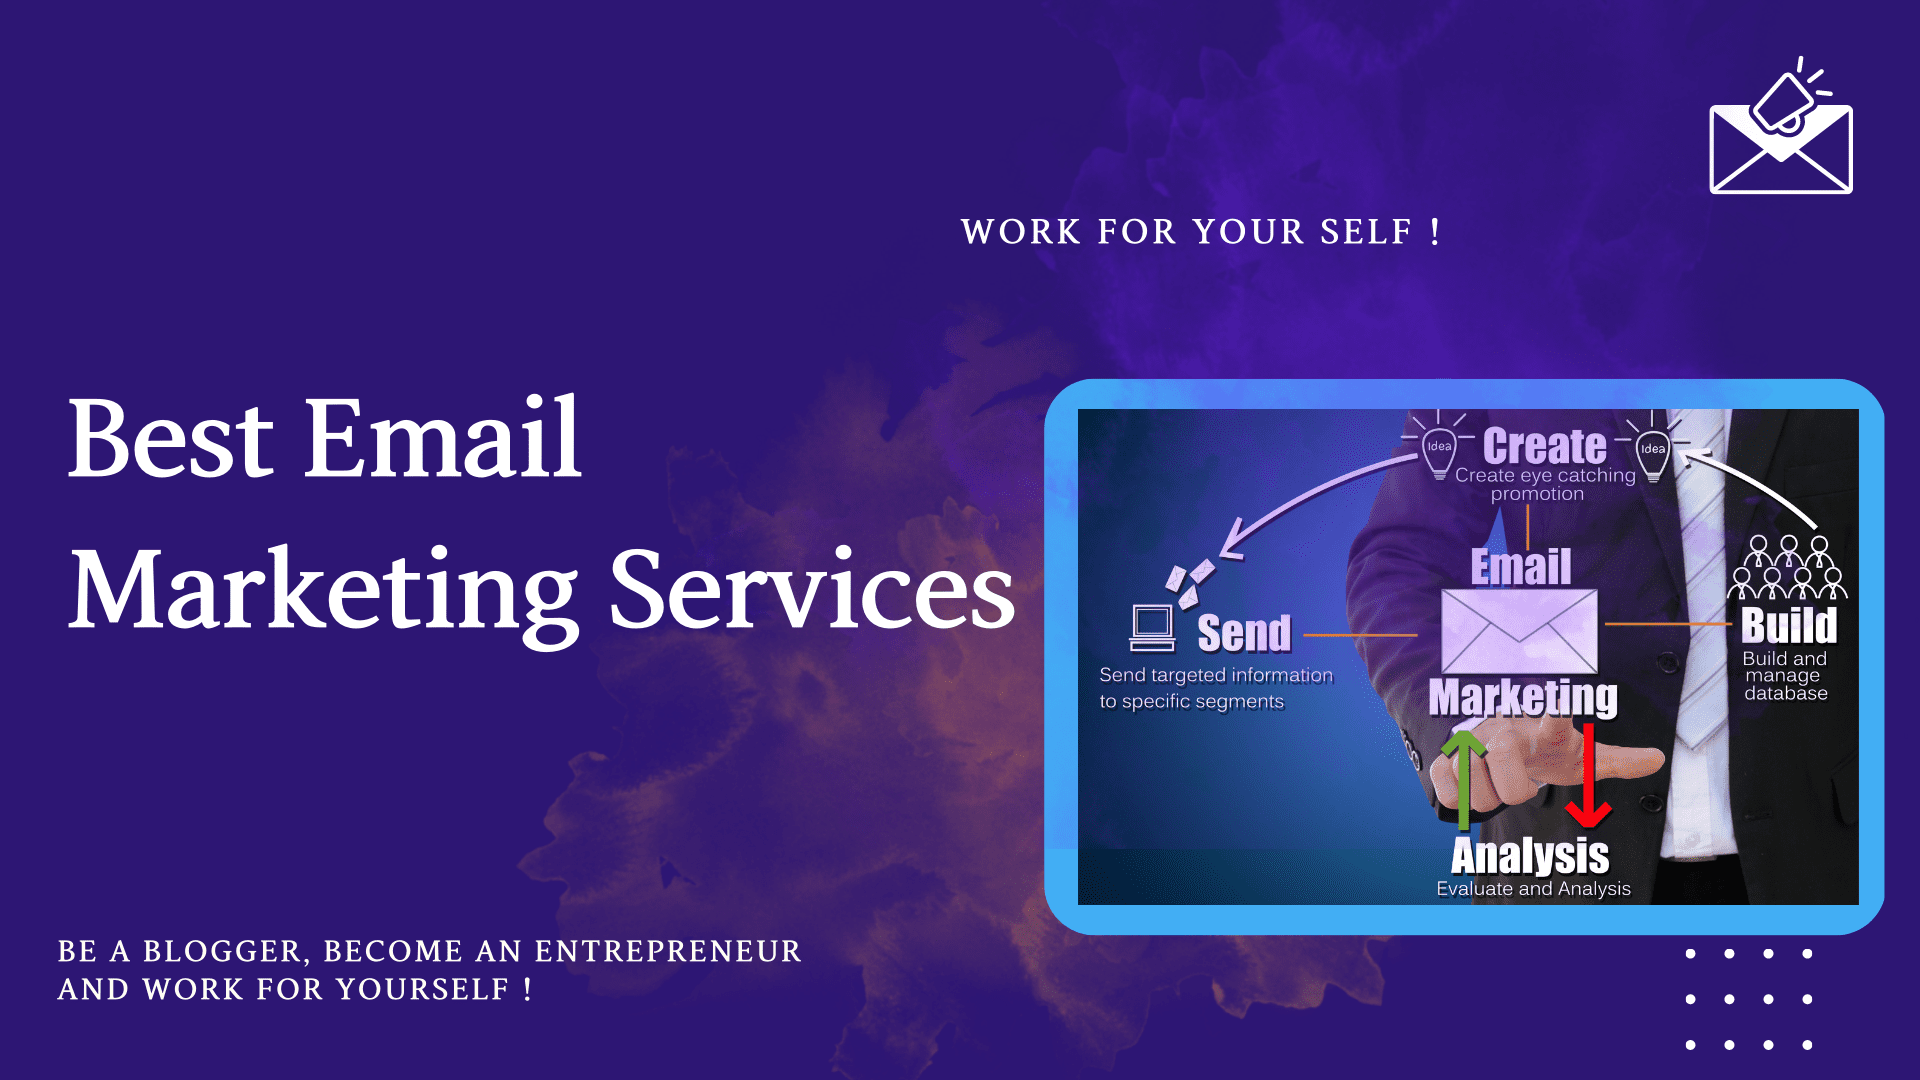 Best-Email-Marketing-Services-Mssaro